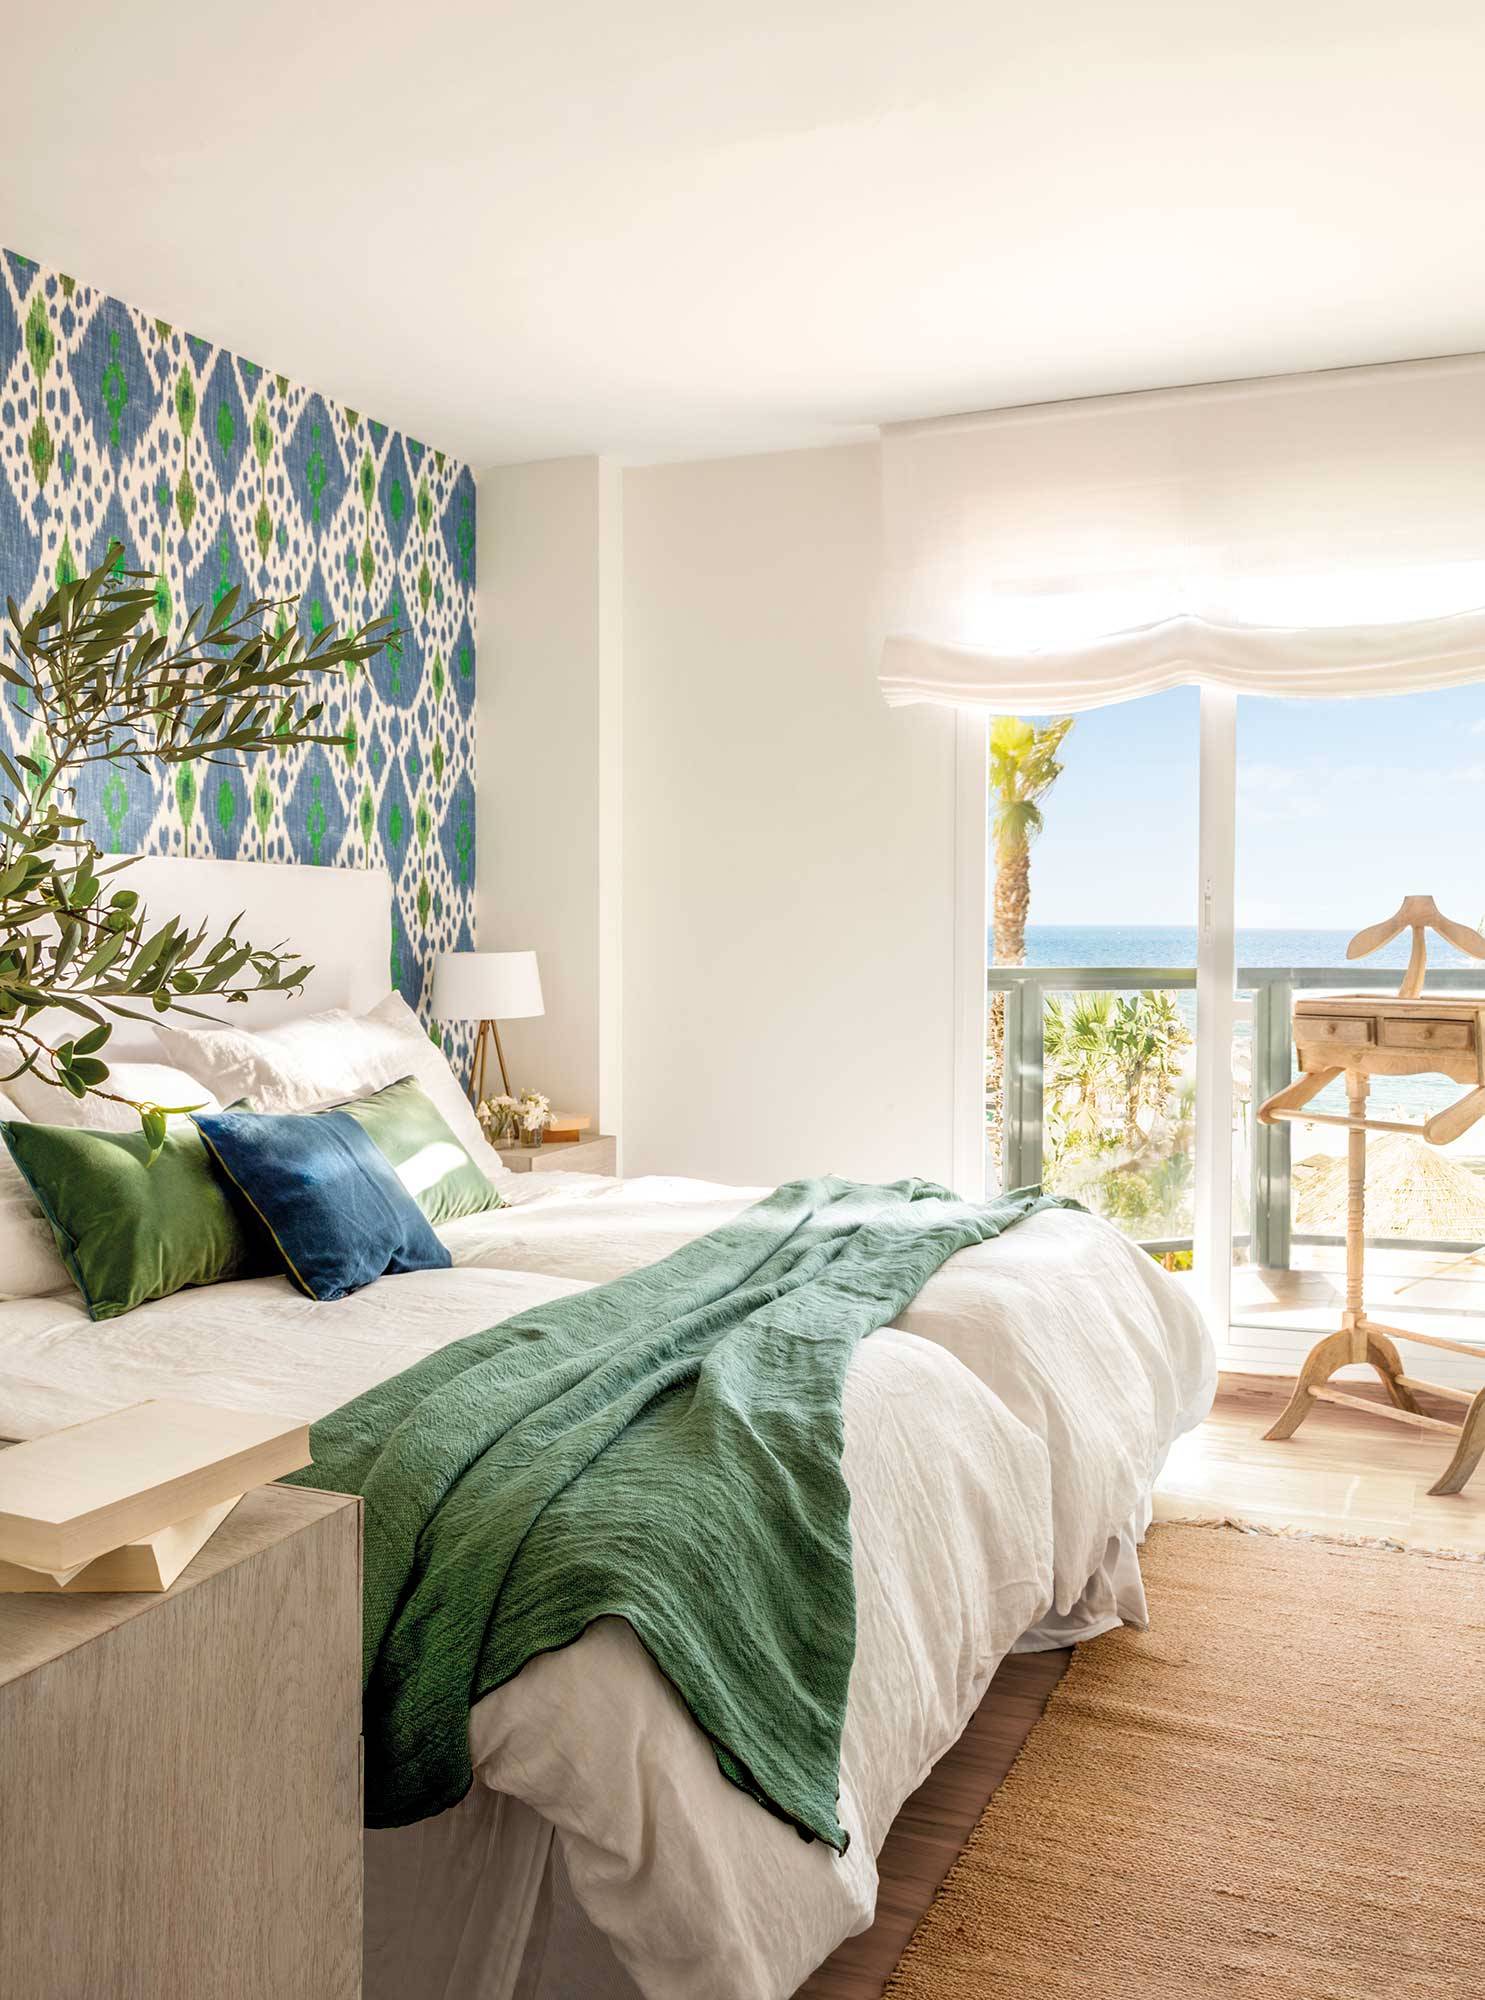 Dormitorio blanco con pared del cabecero con papel pintado con motivos geométricos verdes y azules.